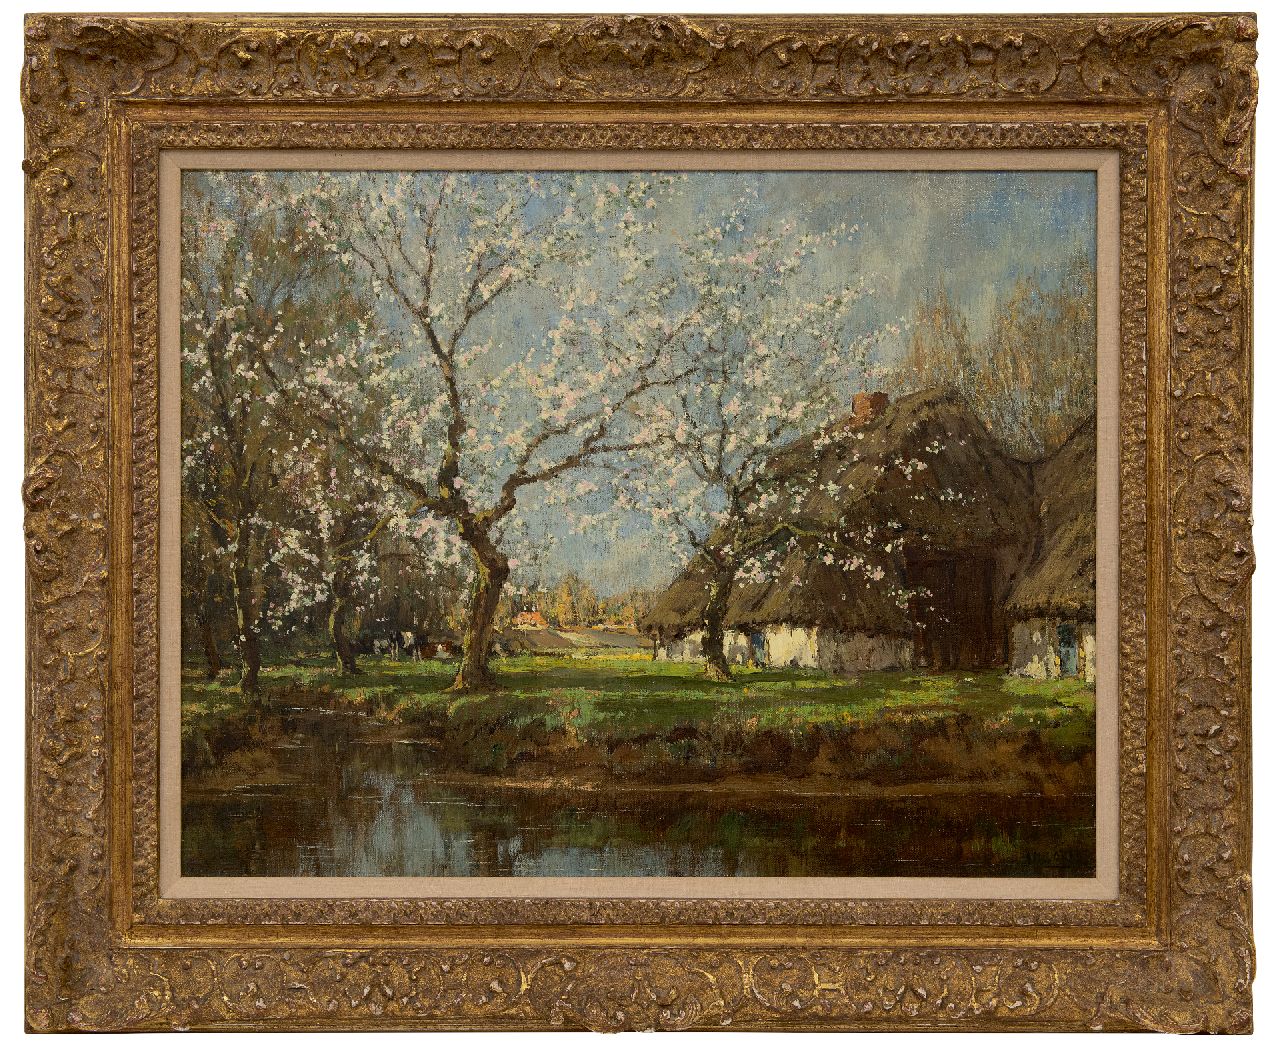 Gorter A.M.  | 'Arnold' Marc Gorter | Schilderijen te koop aangeboden | Boerderij bij voorjaarsbloesem, olieverf op doek 50,7 x 65,7 cm, gesigneerd rechtsonder